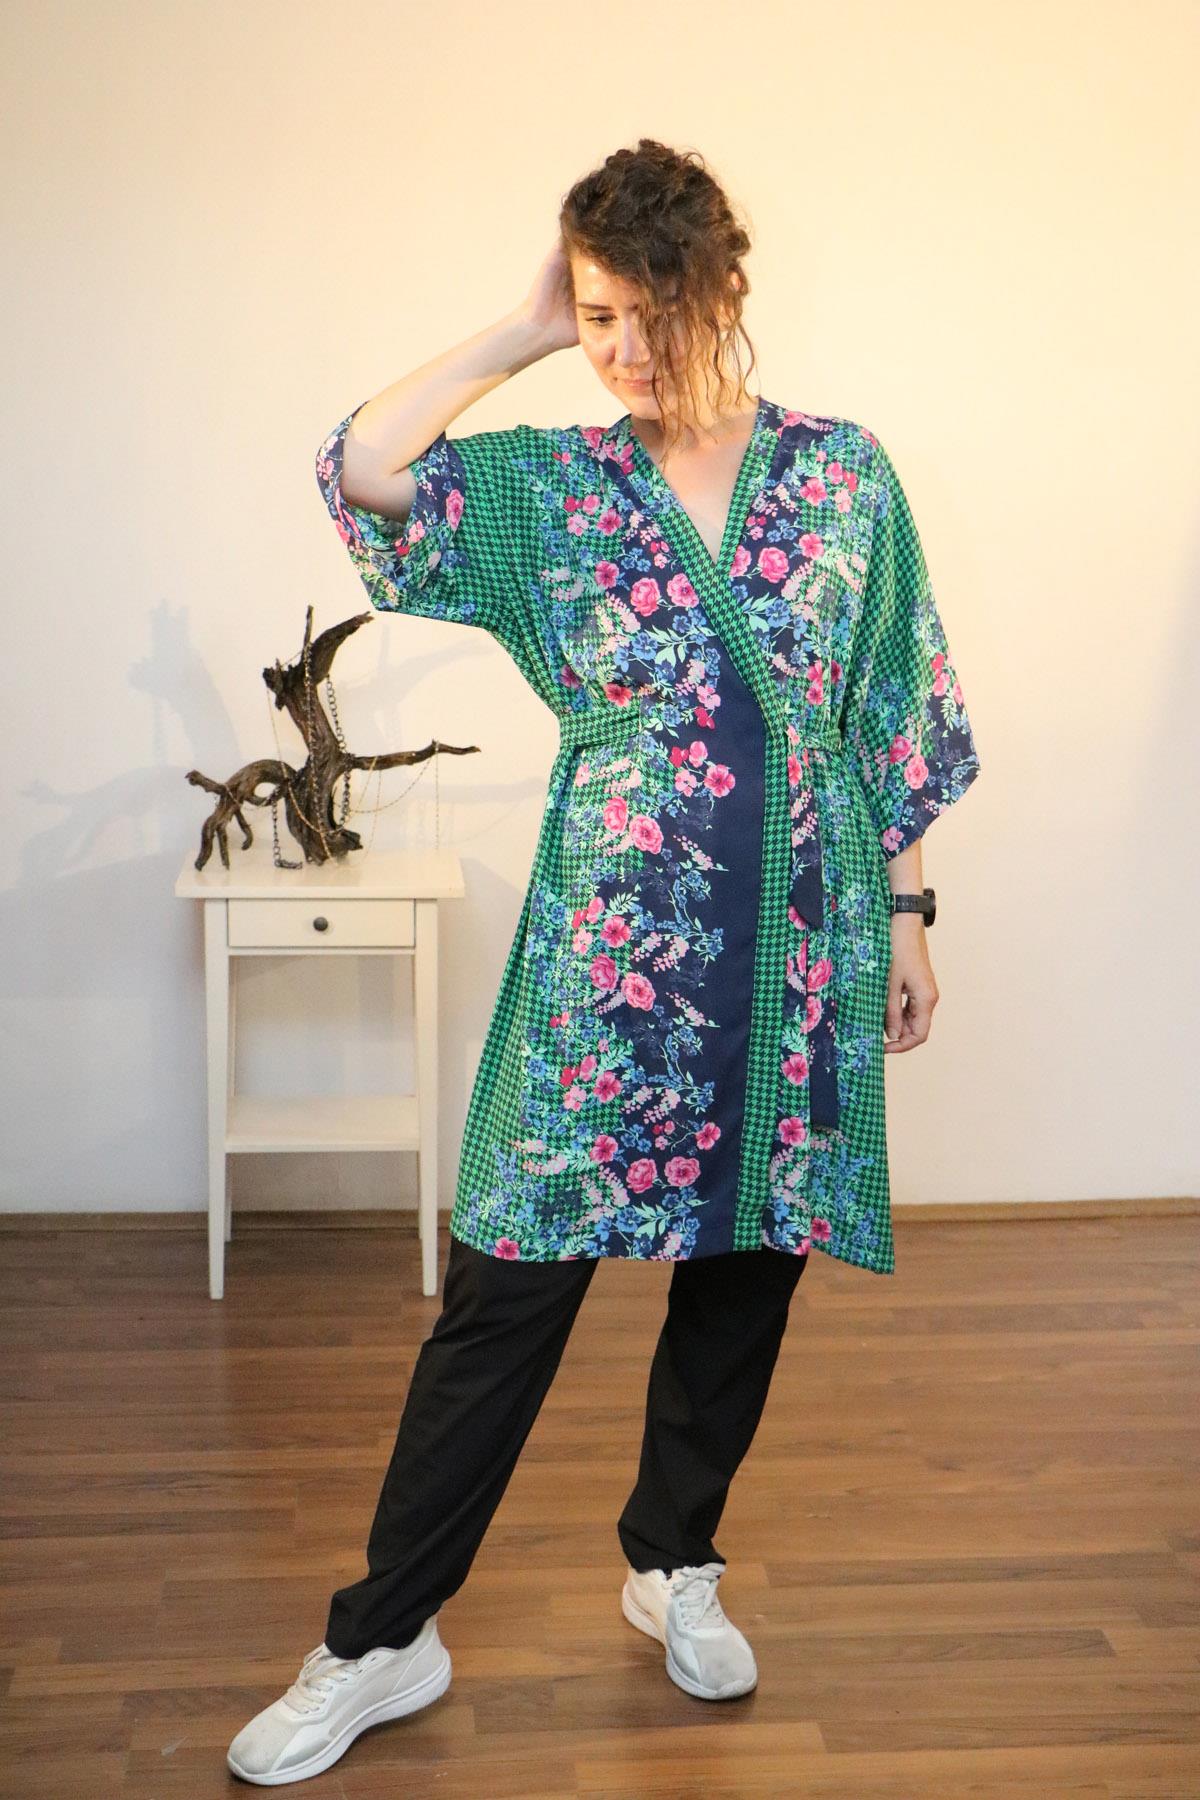 Lapiz Yeşil-Lacivert Renk, Çiçek Desenli İnce Krep Kumaş, Uzun Kimono Elbise